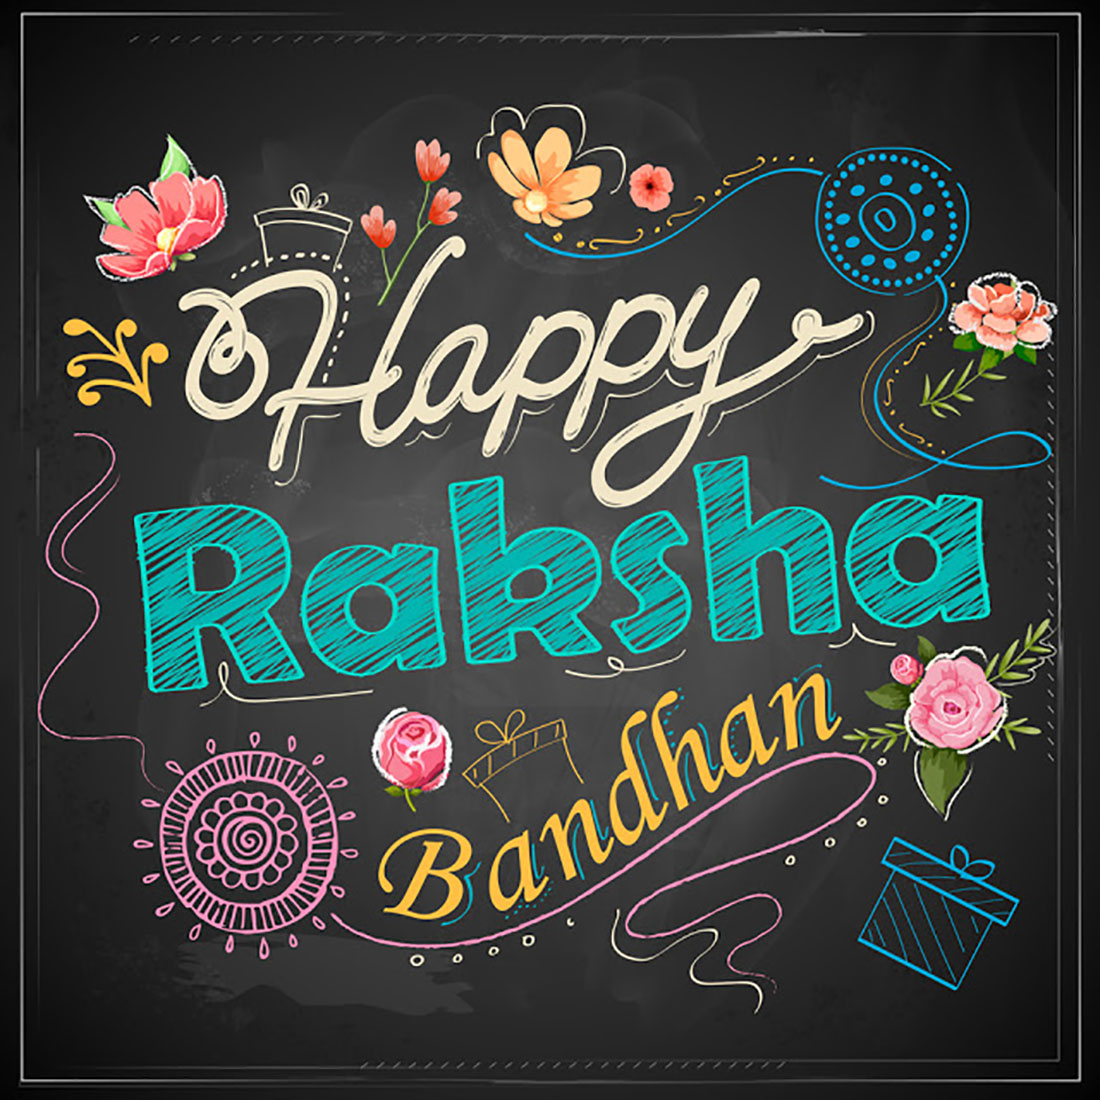 Raksha Bandhan Images Free Download - Illustration - 1100x1100 Wallpaper -  